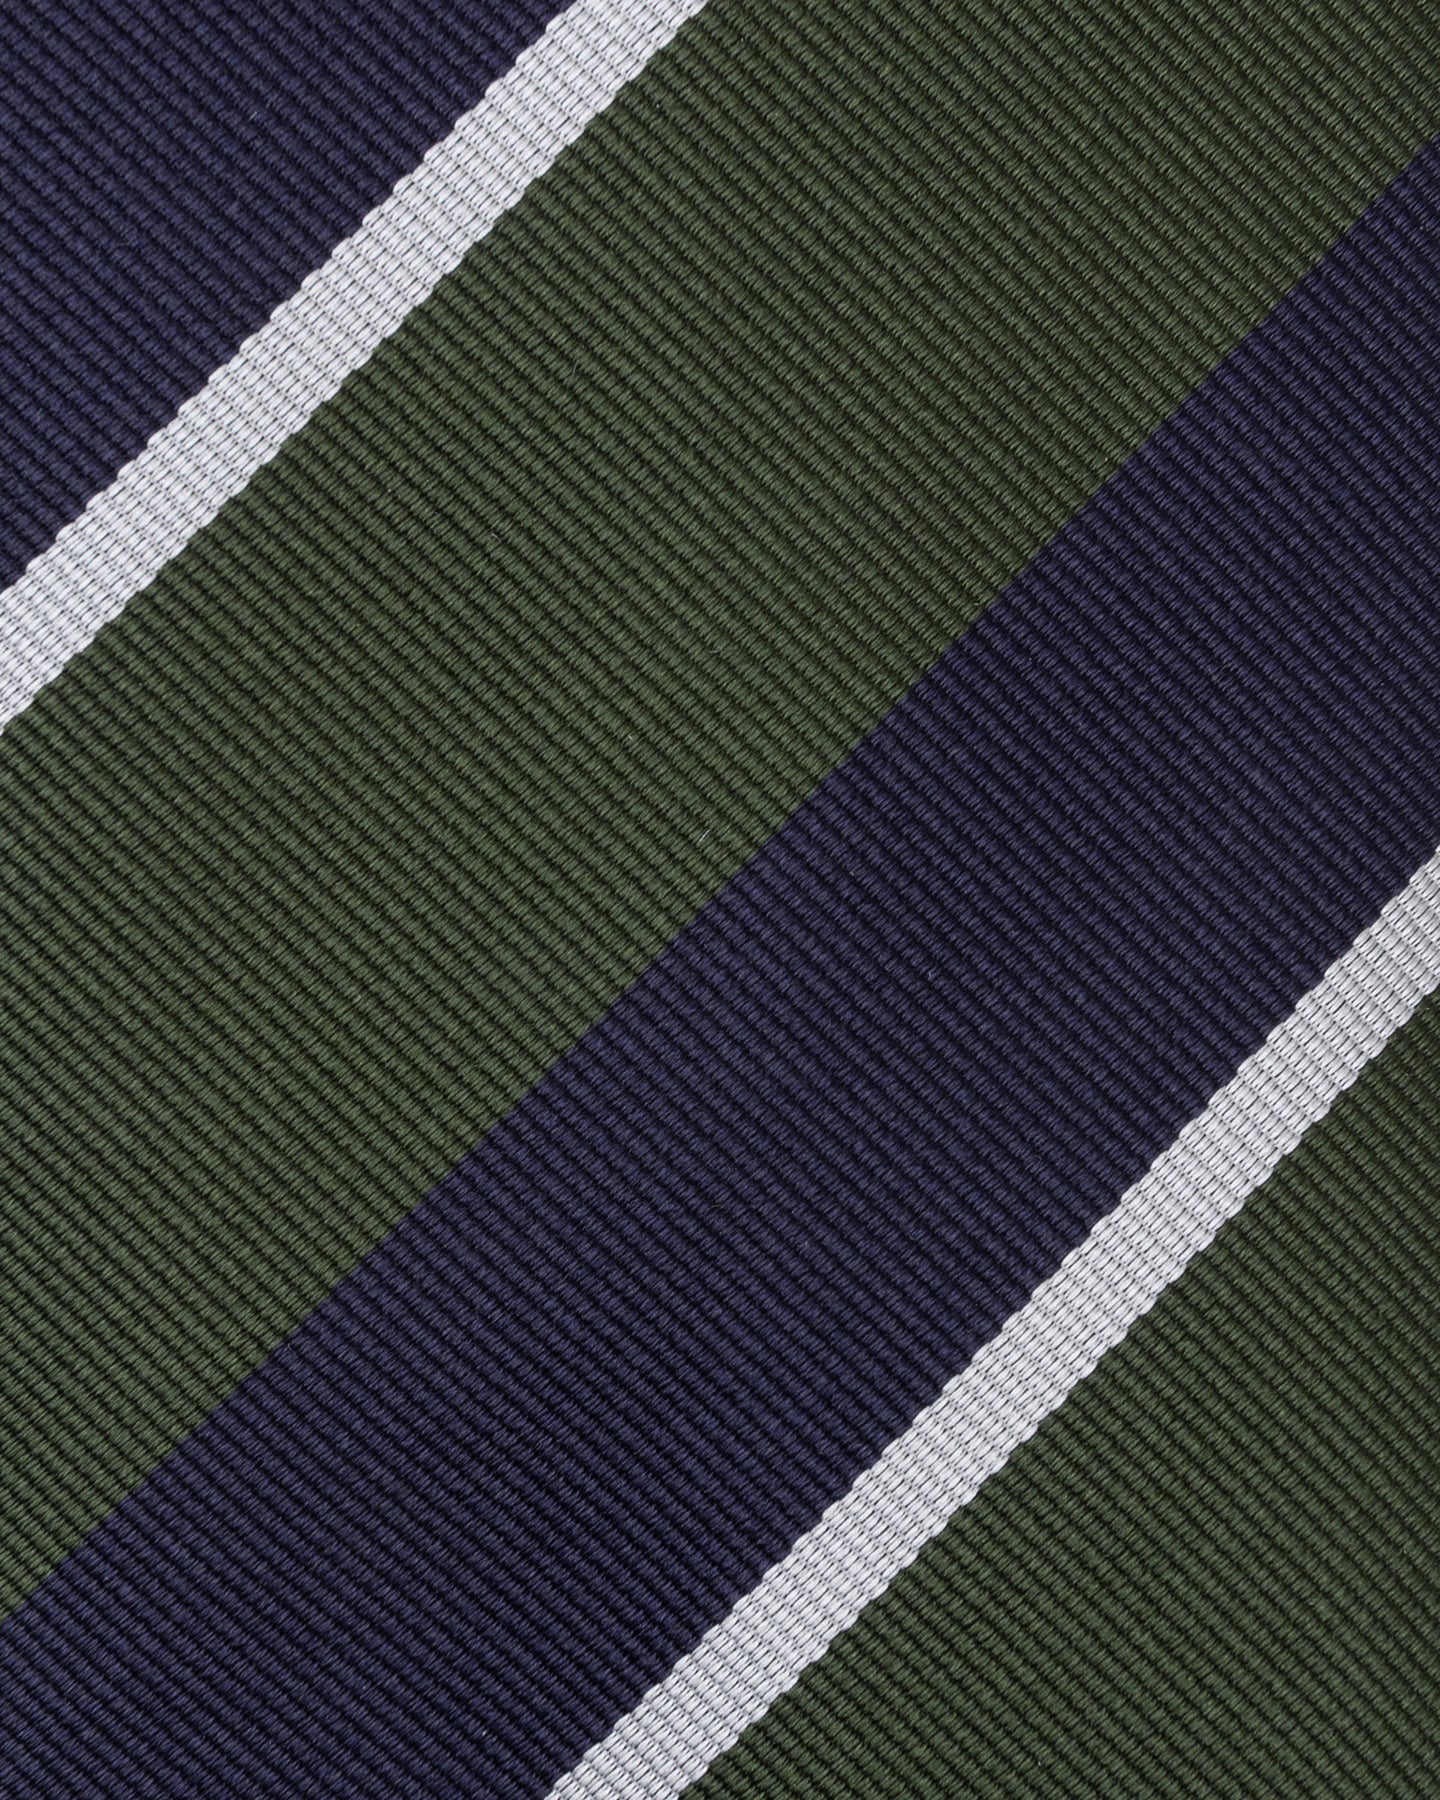 Navy, Green and White Regimental Stripe Repp Tie